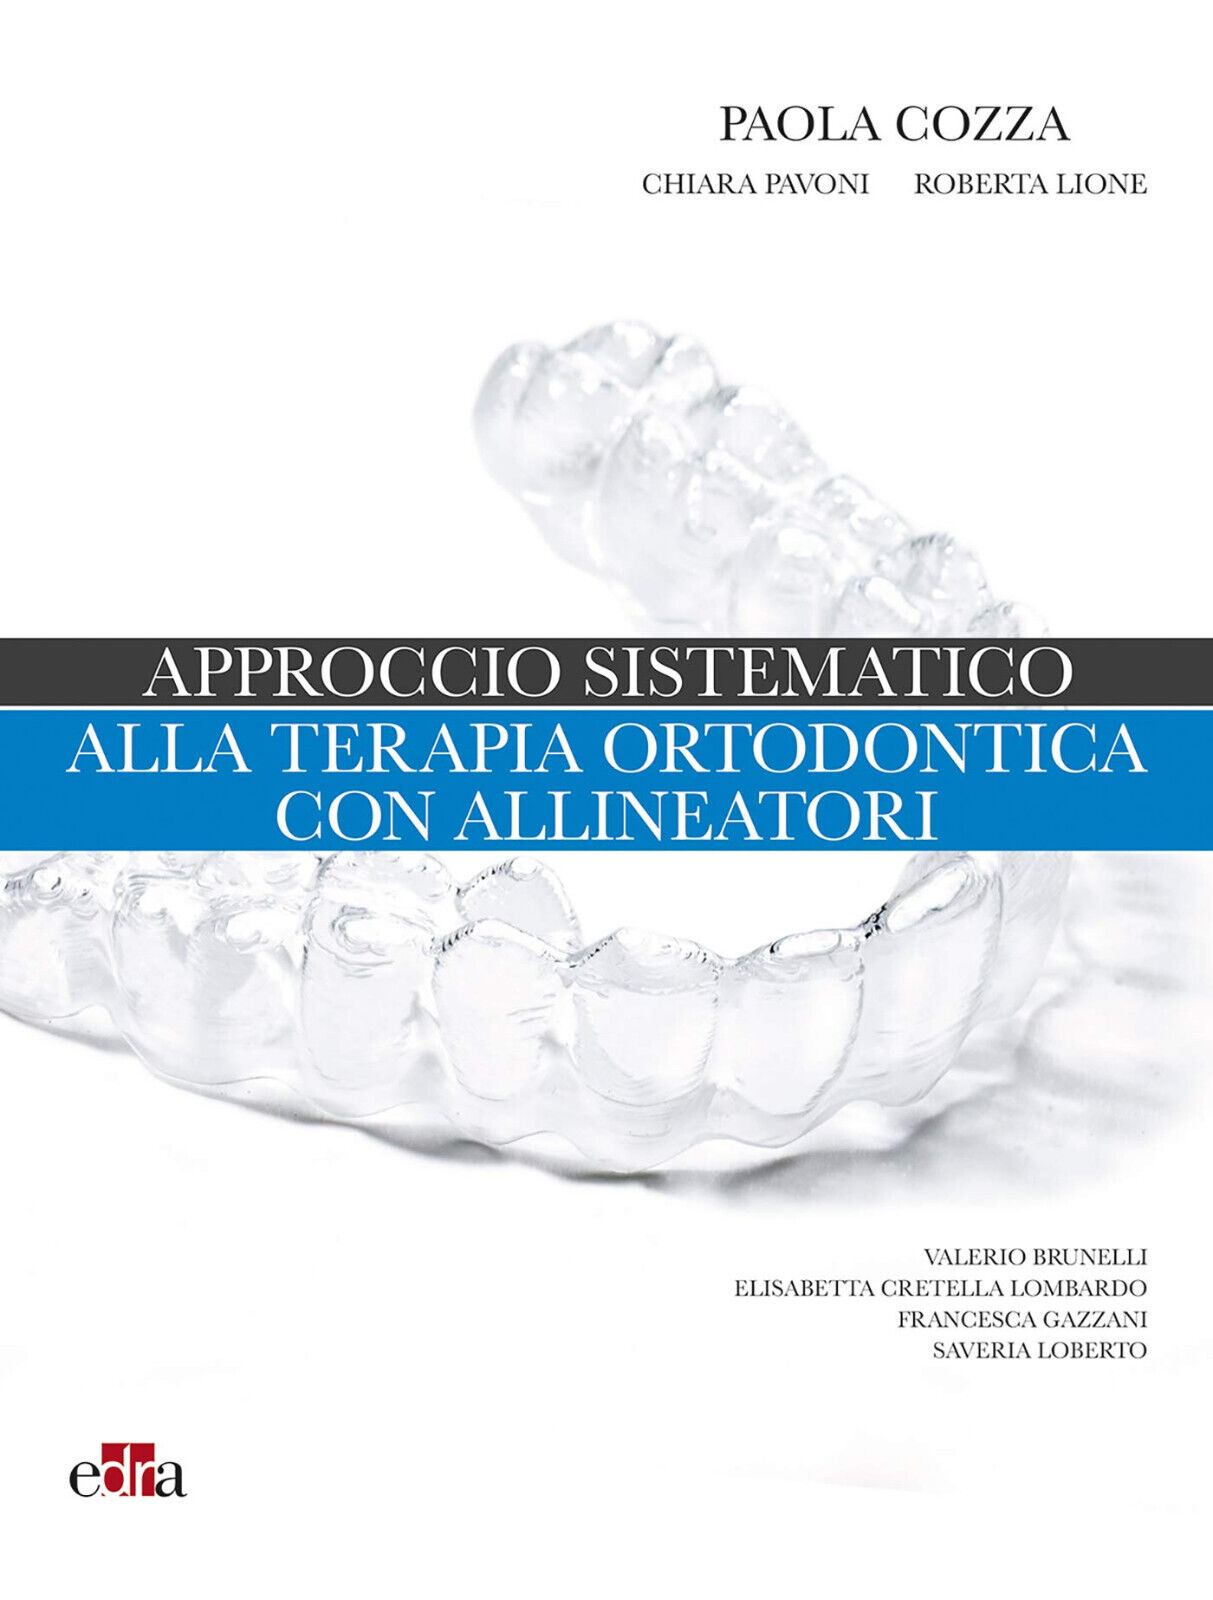 Approccio sistematico alla terapia ortodontica con allineatori - Edra, 2020